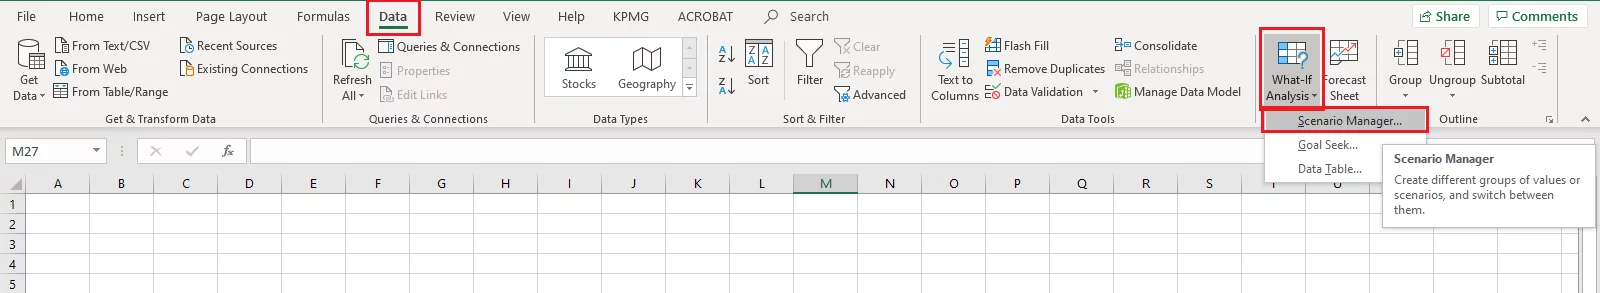 Accessing the Scenarios feature in Excel